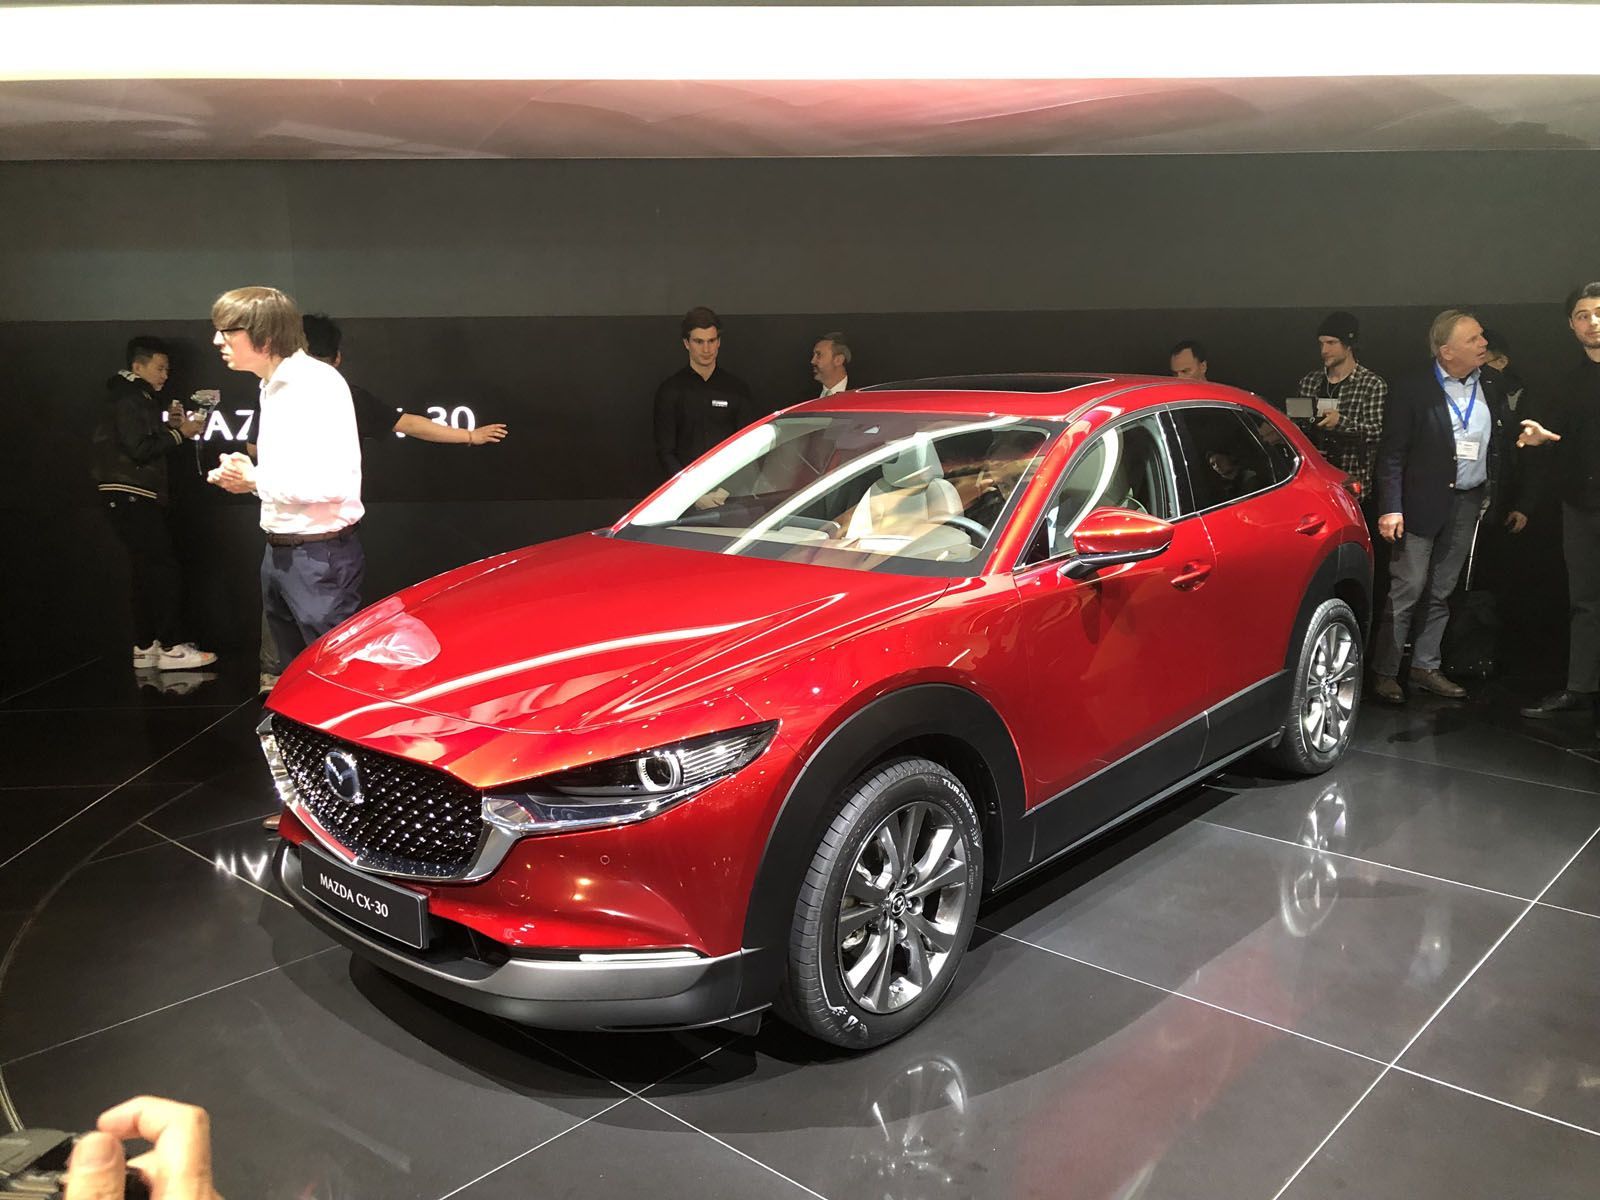 All-new Mazda CX-30 Rocks Geneva Motor Show